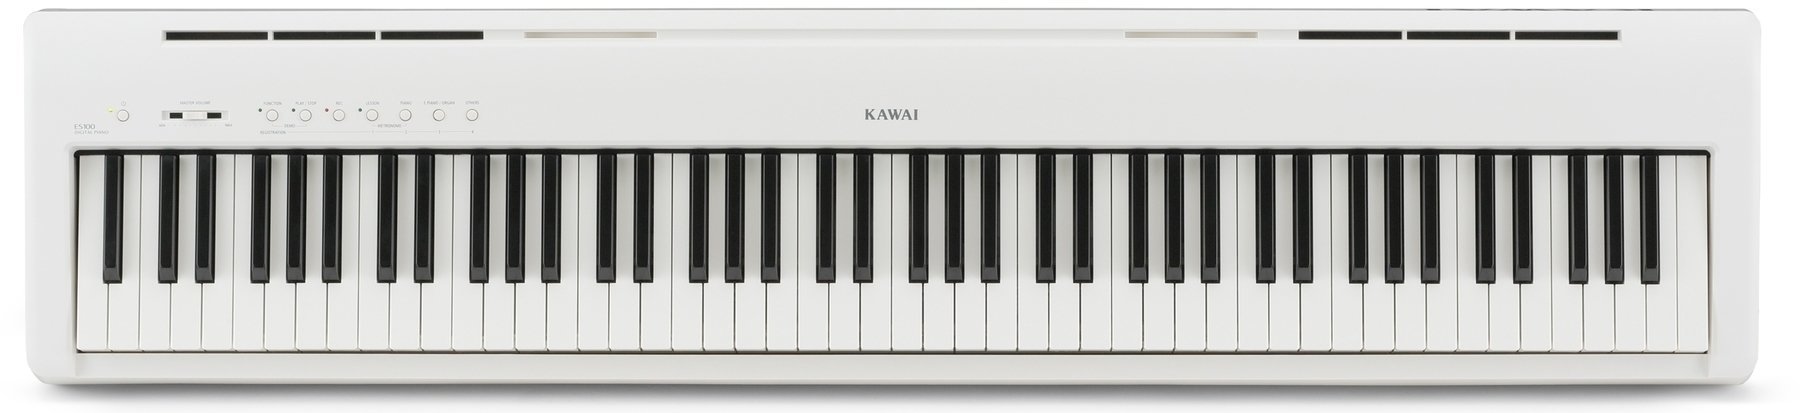 Digitalt scen piano Kawai ES100W Portable Digital Piano